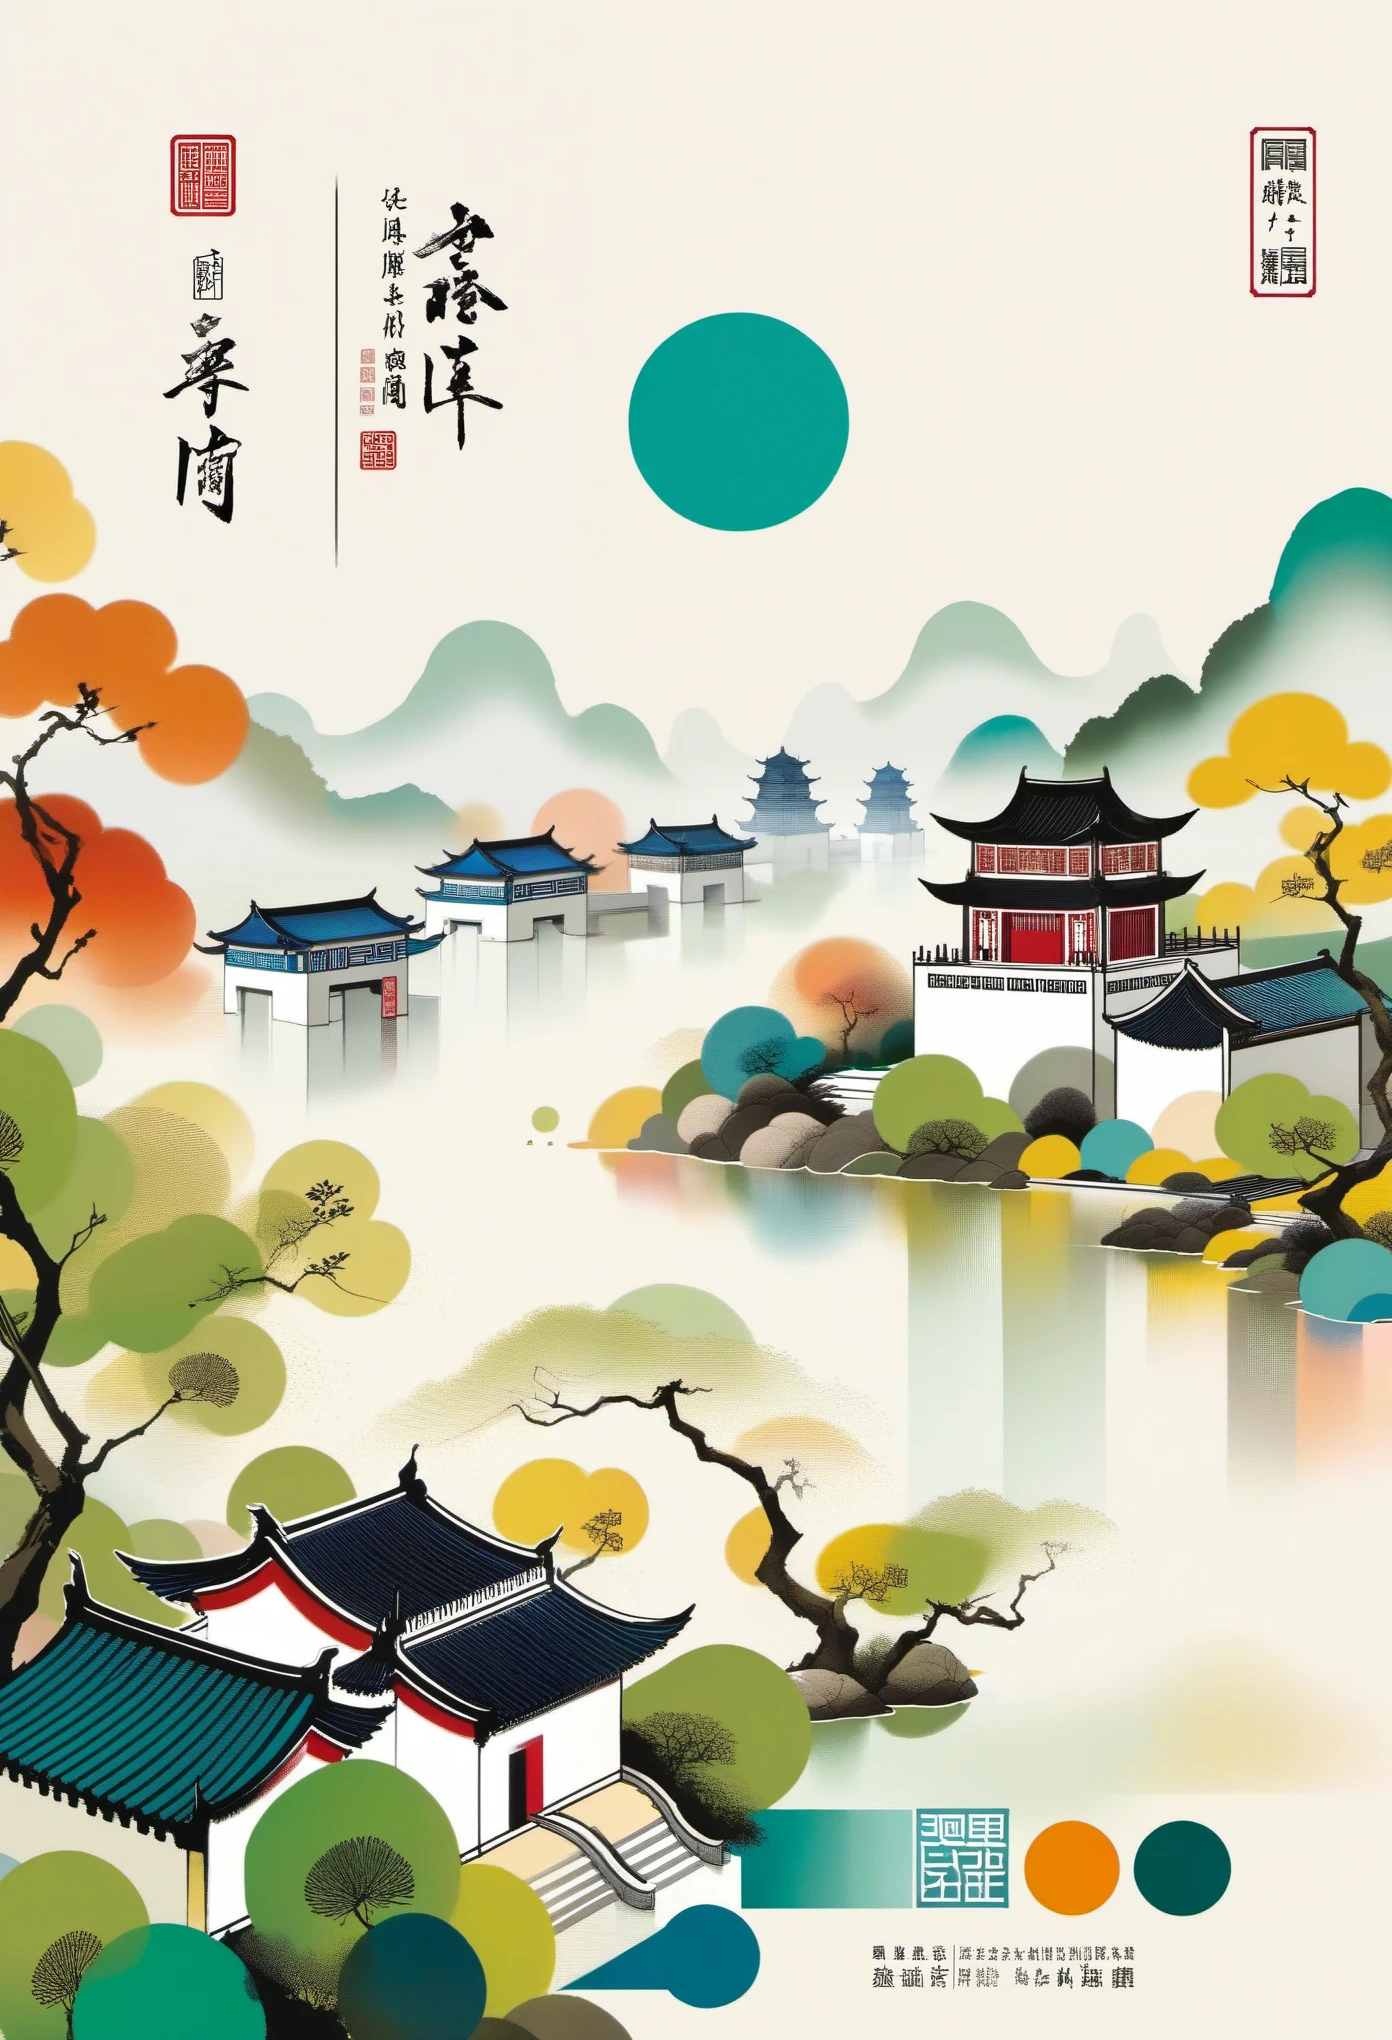 製品パッケージデザイン，梱包箱，メールオーダーボックス：幾何学的抽象インク，江南景観建築群について説明する，呉貫中のスタイルは、伝統的な中国の水墨技法と西洋の絵画の概念を融合した芸術表現である。. 伝統的なテーマを現代的に解釈したのが特徴です, 色と線でユニークな視覚効果を生み出す.